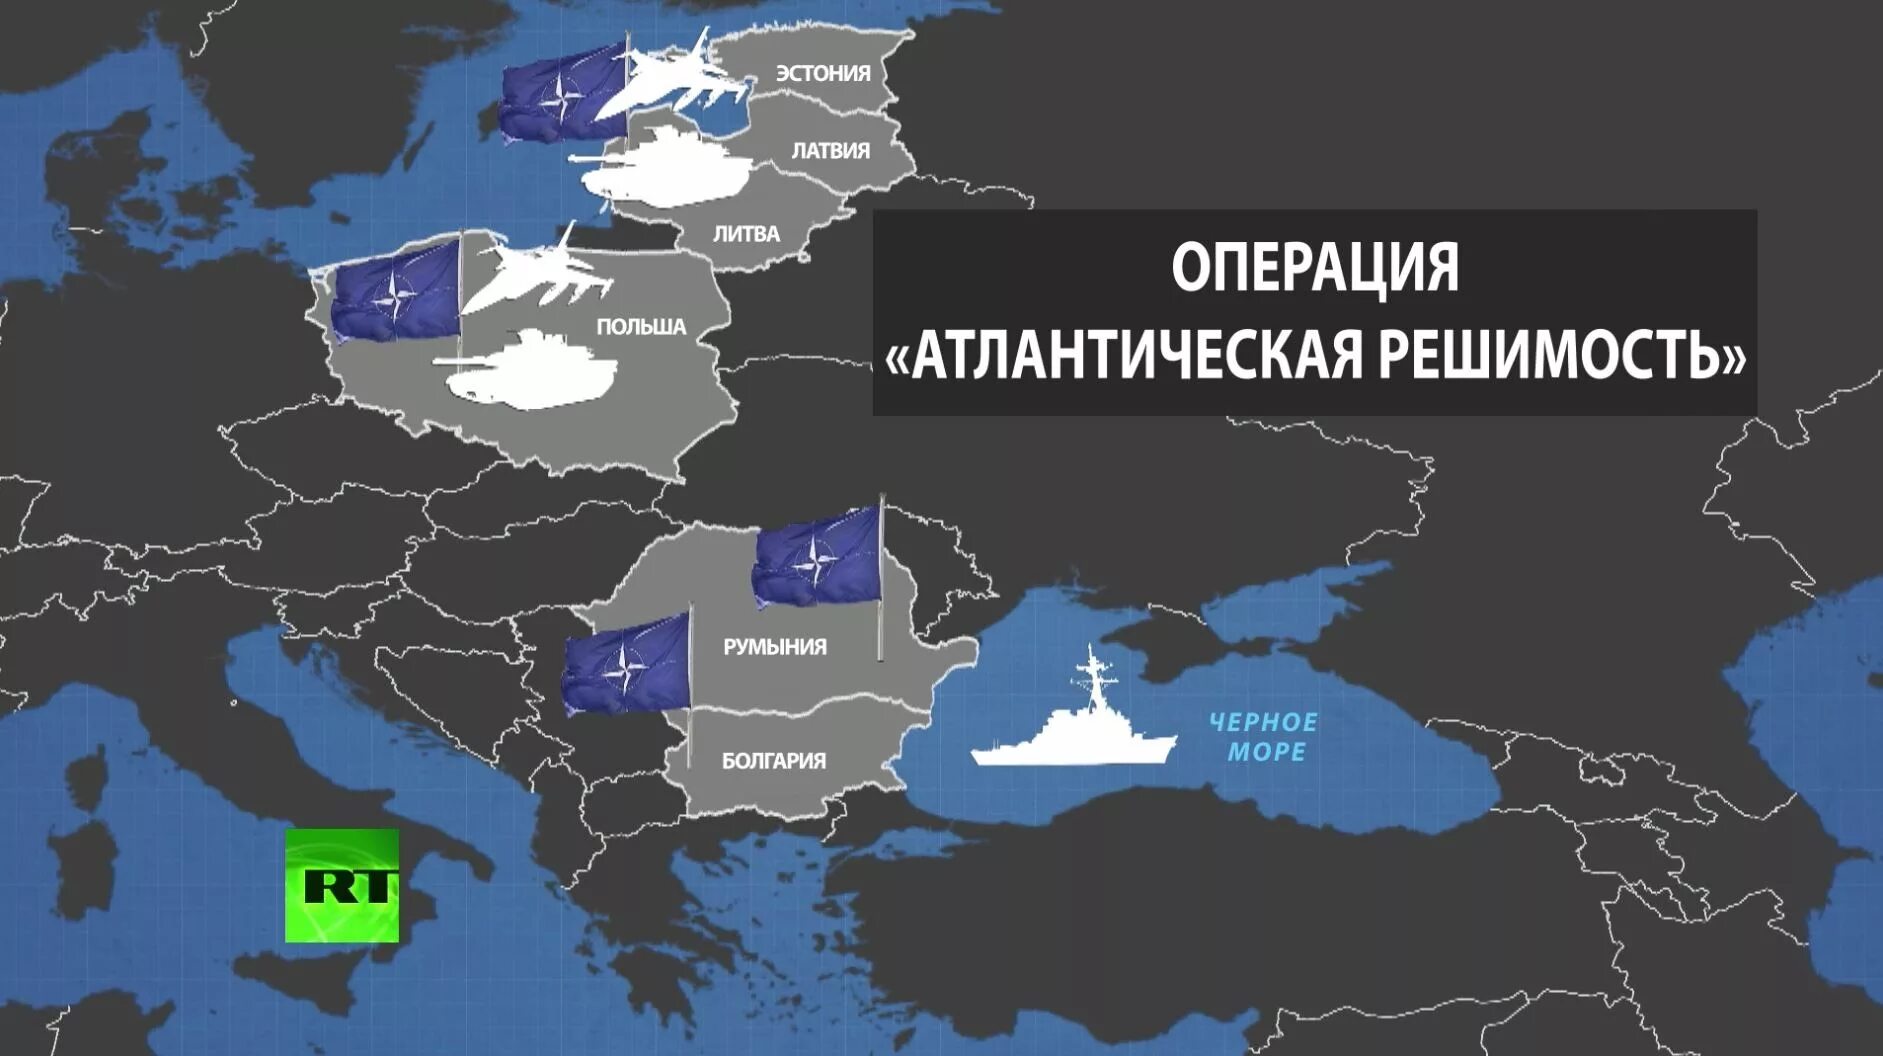 НАТО У границ России. Границы НАТО. Границы НАТО С Россией на карте. НАТО У границ РФ.